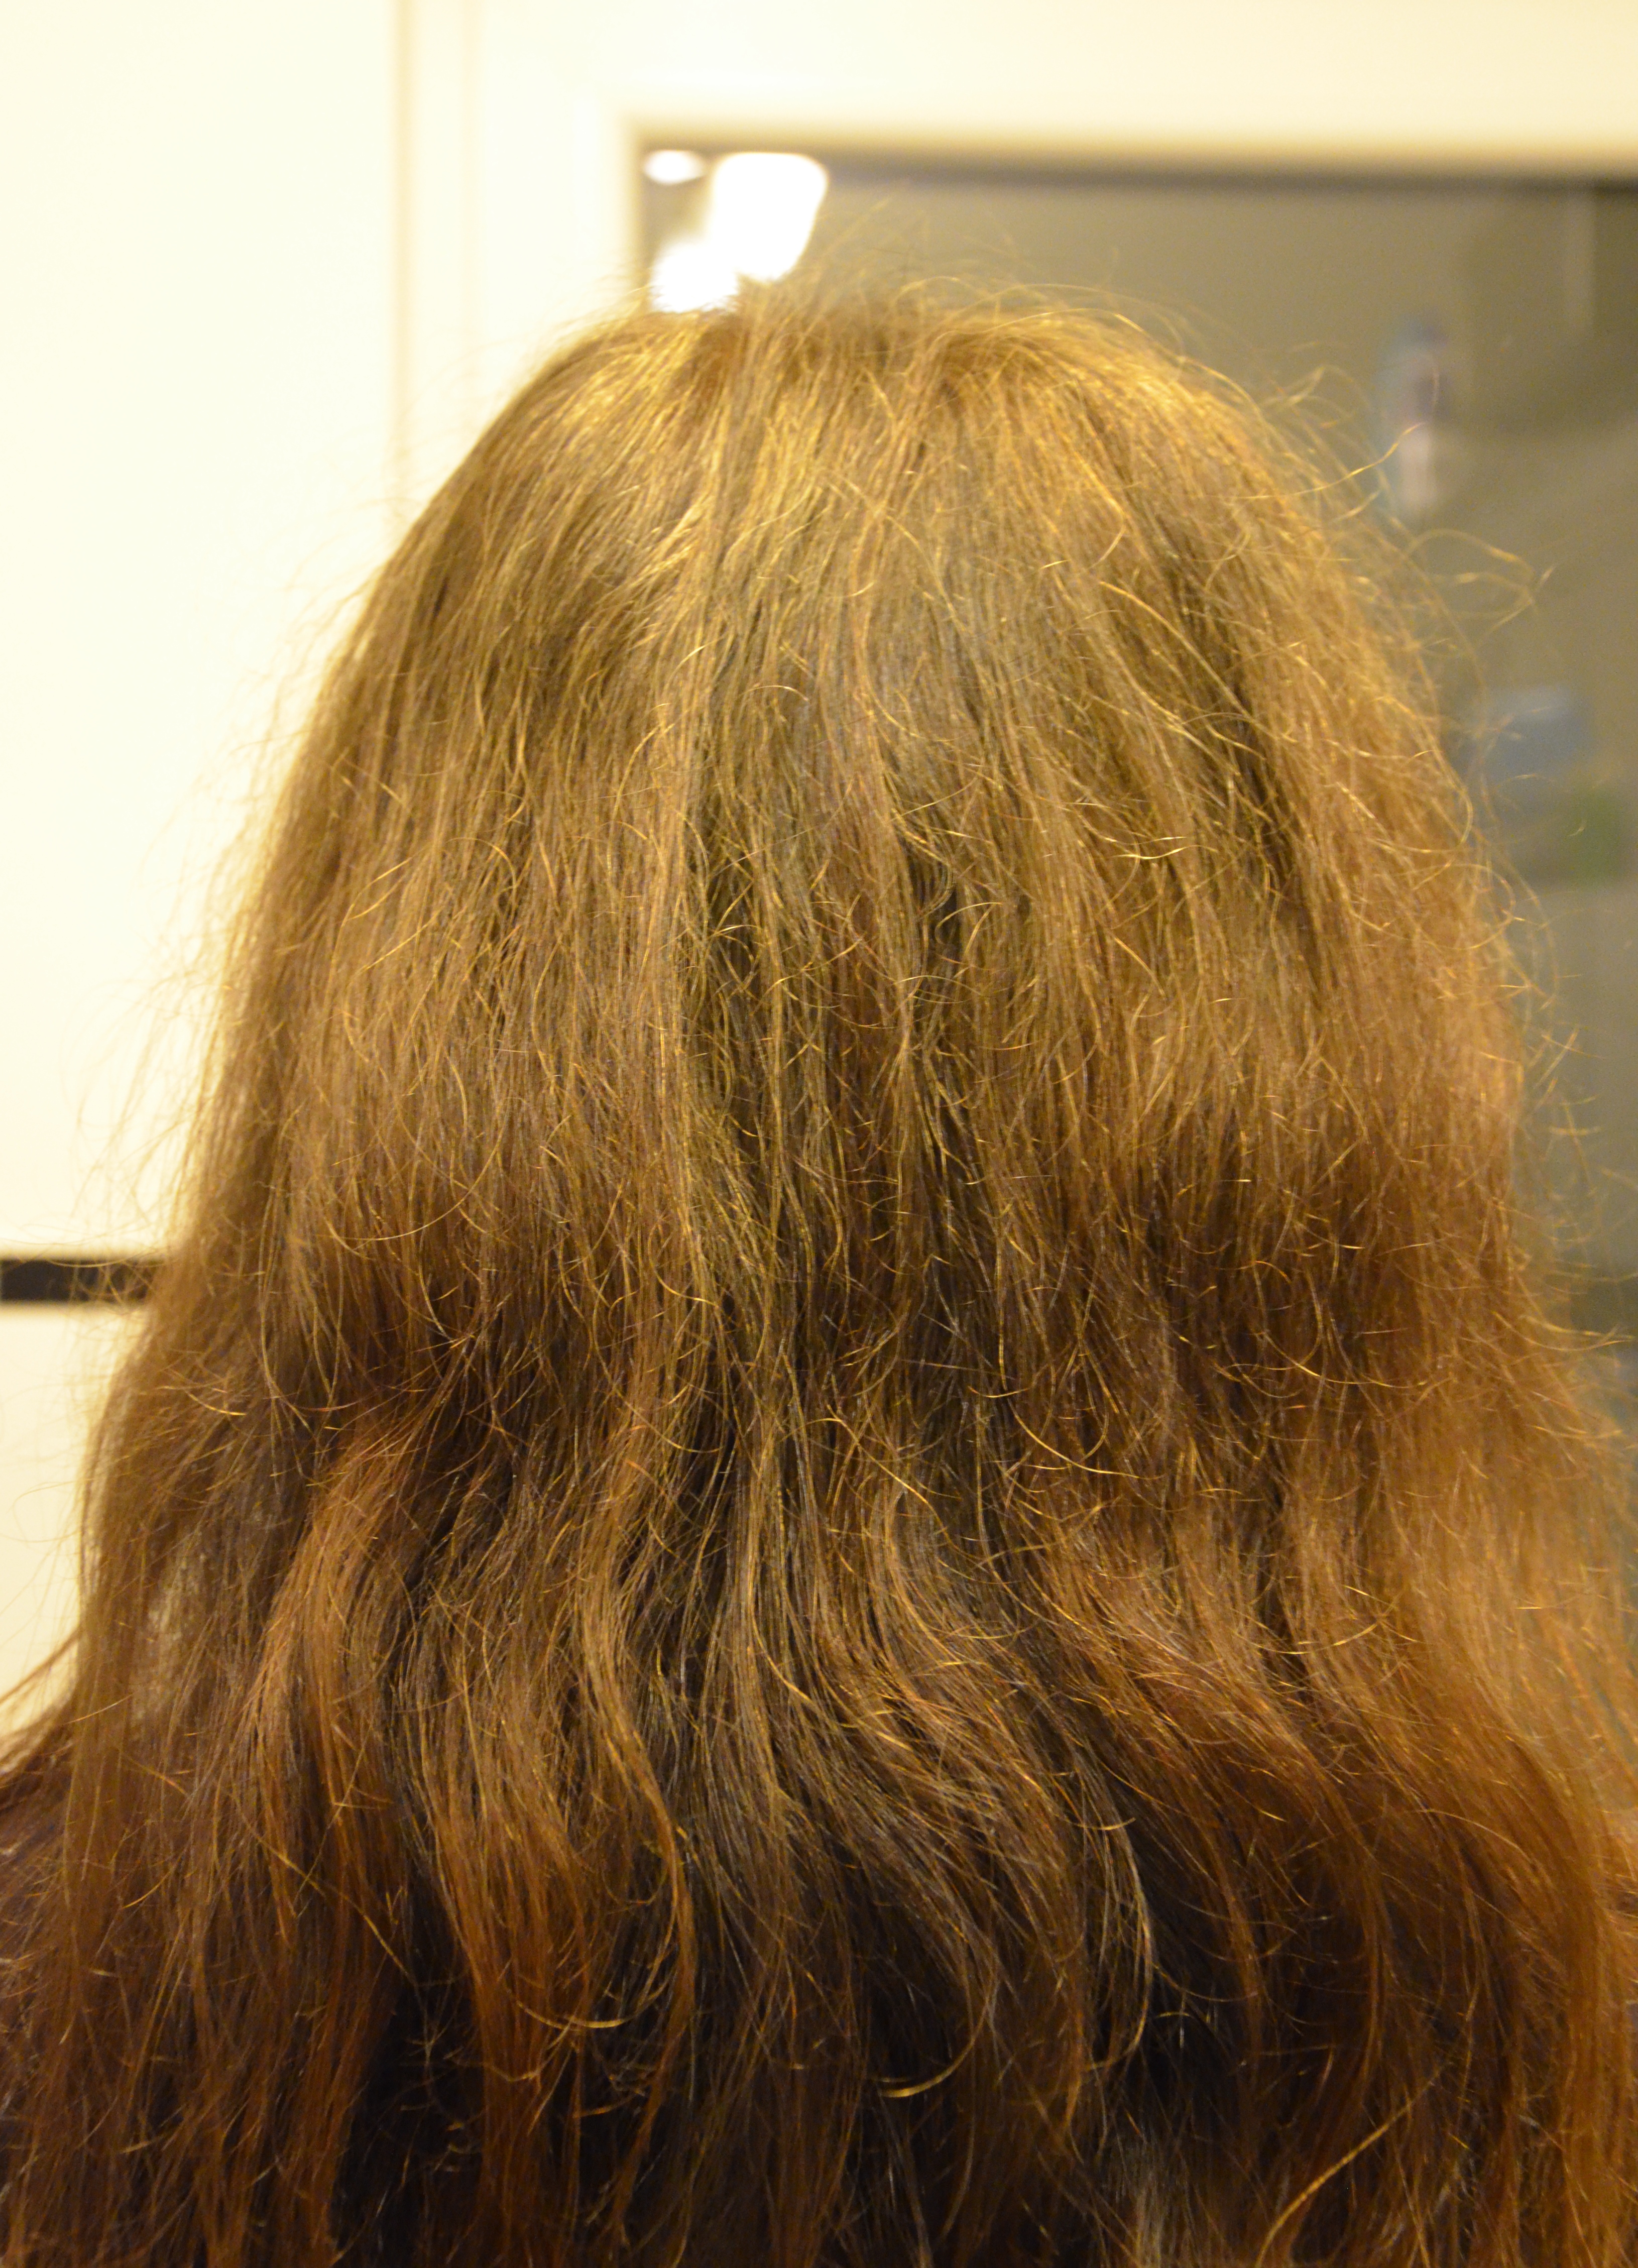 identificatie goud Evacuatie Gegen das Grau und für mehr Farbe in meinem Haar - Lavendelblog